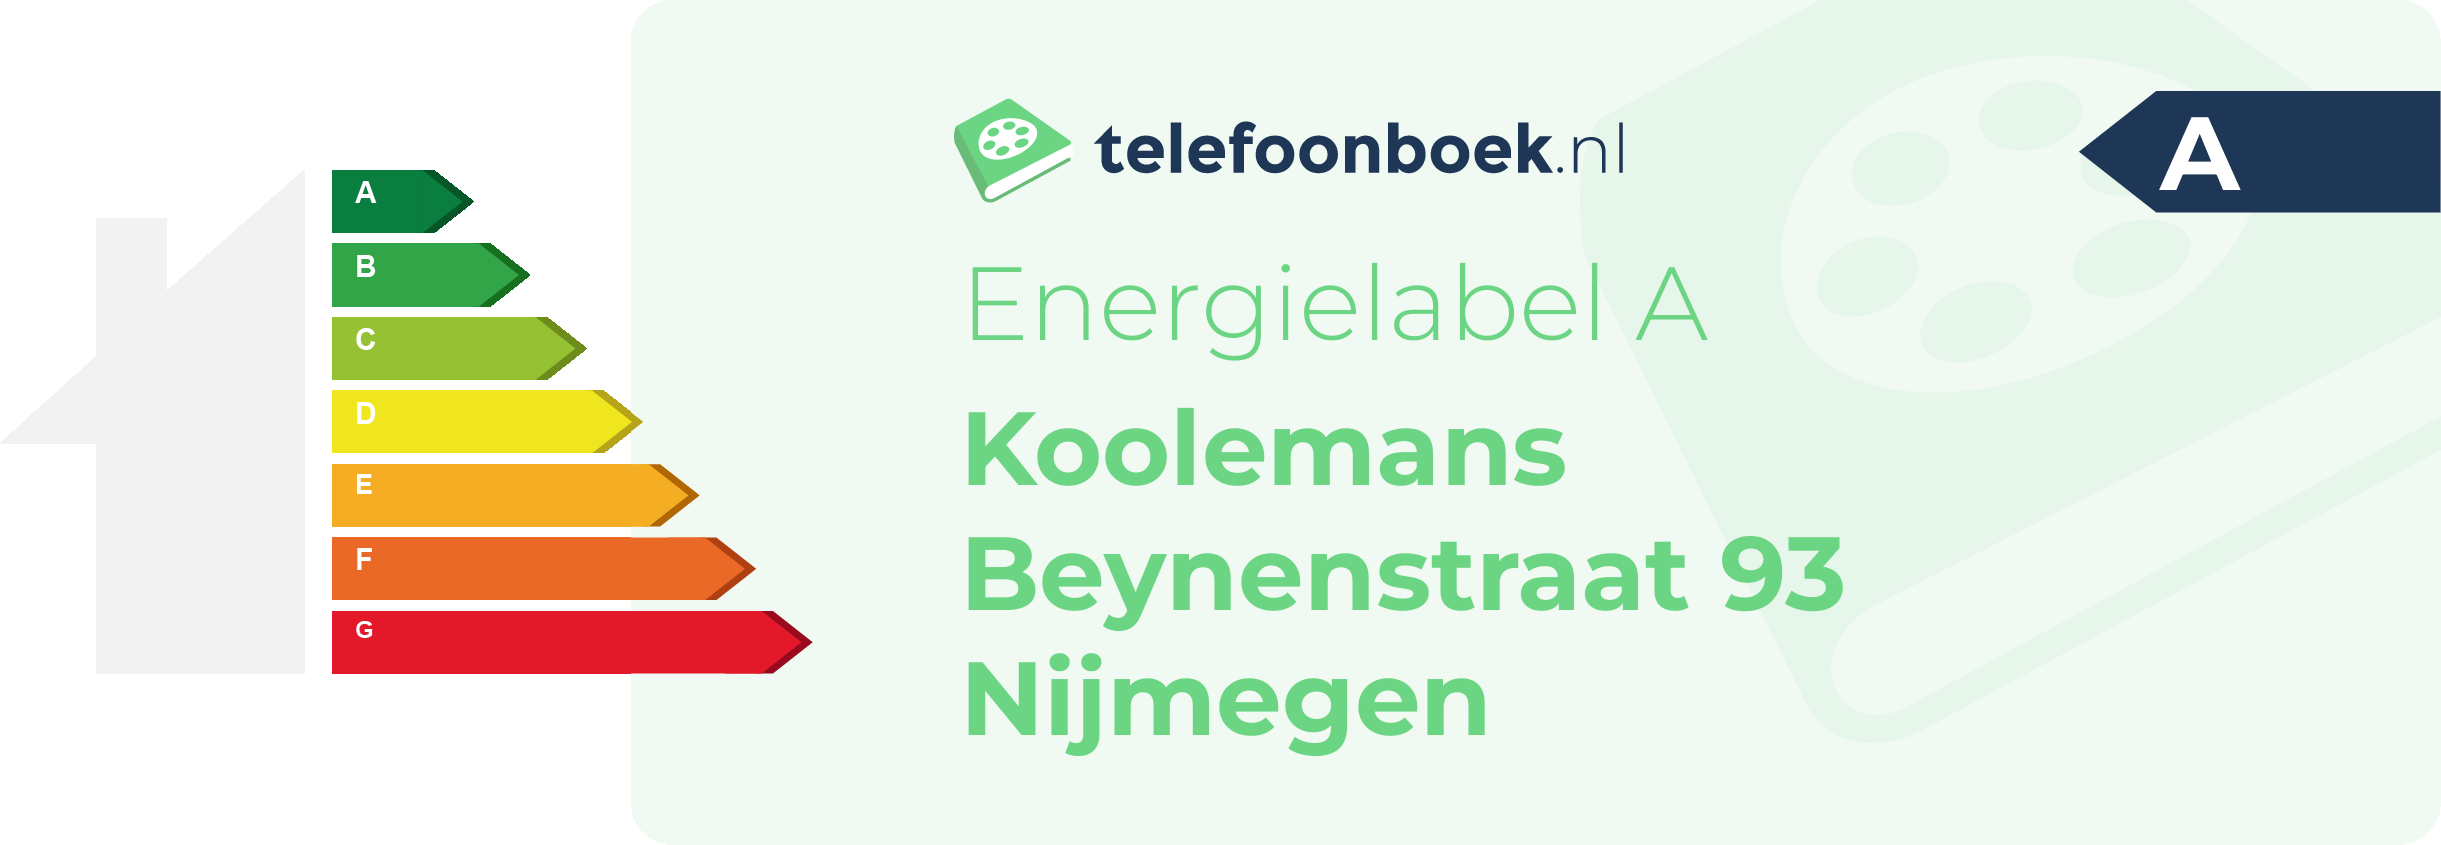 Energielabel Koolemans Beynenstraat 93 Nijmegen